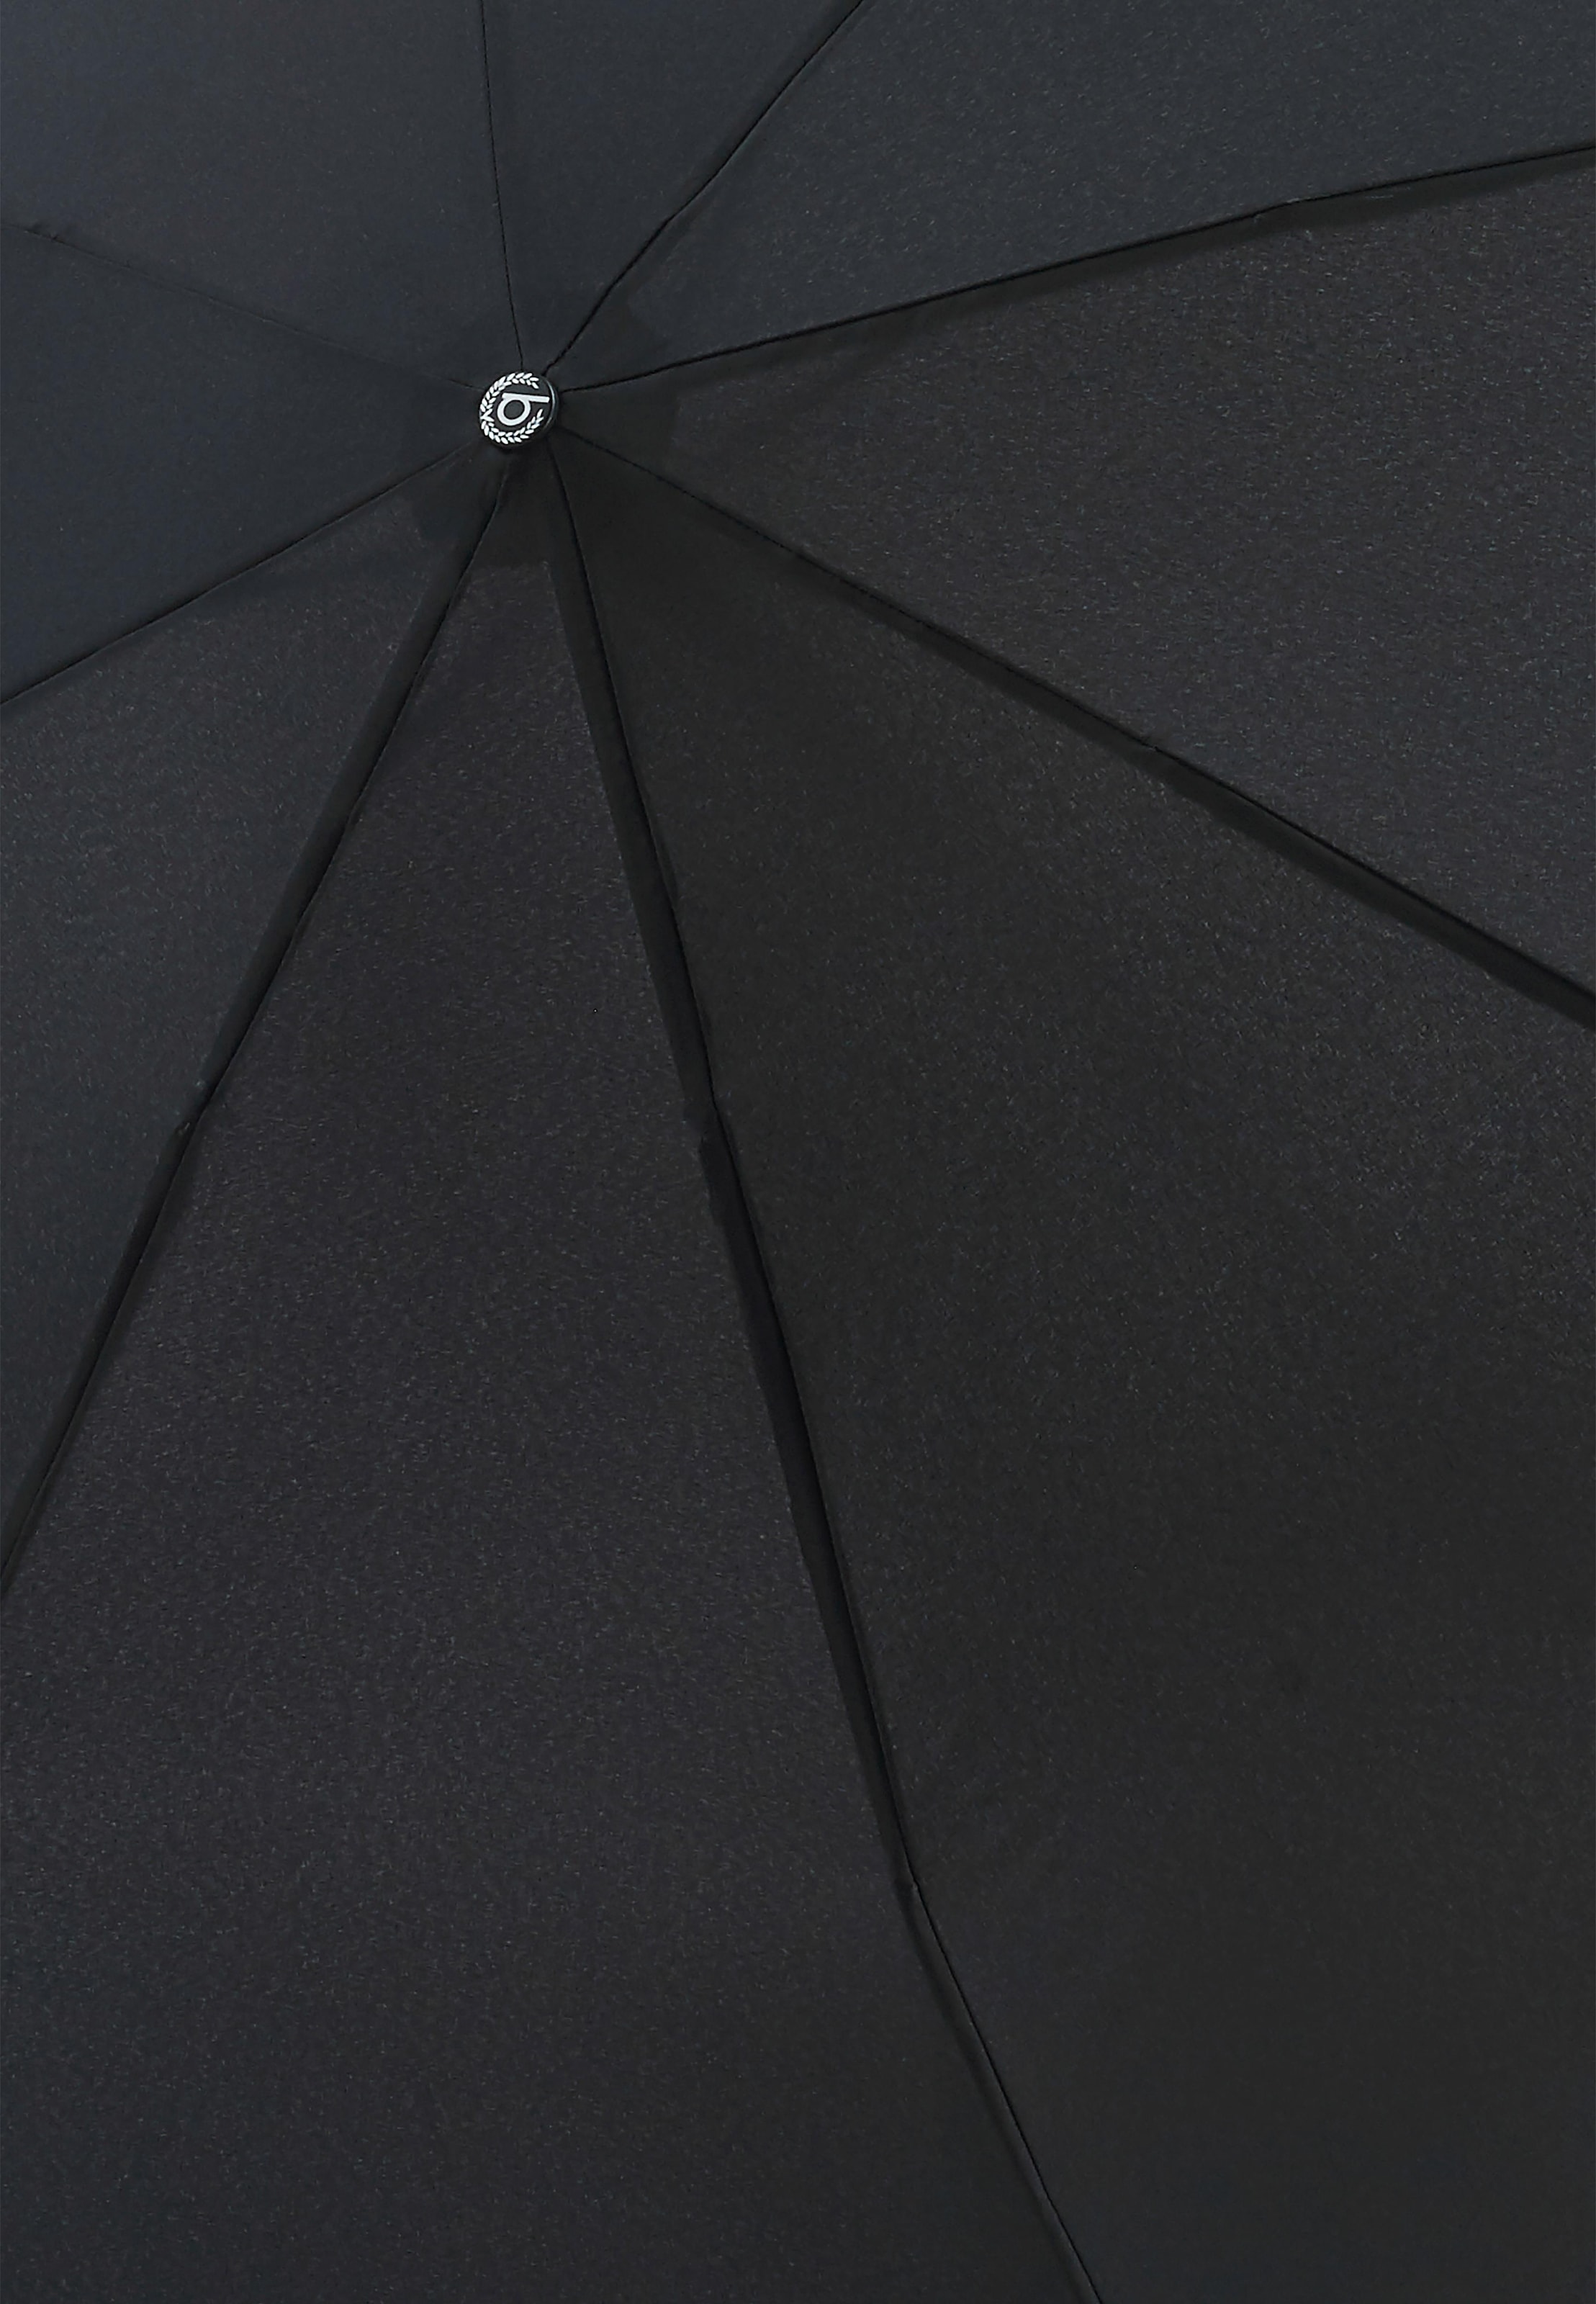 Turismo, BAUR schwarz« Taschenregenschirm »Gran bugatti online kaufen |